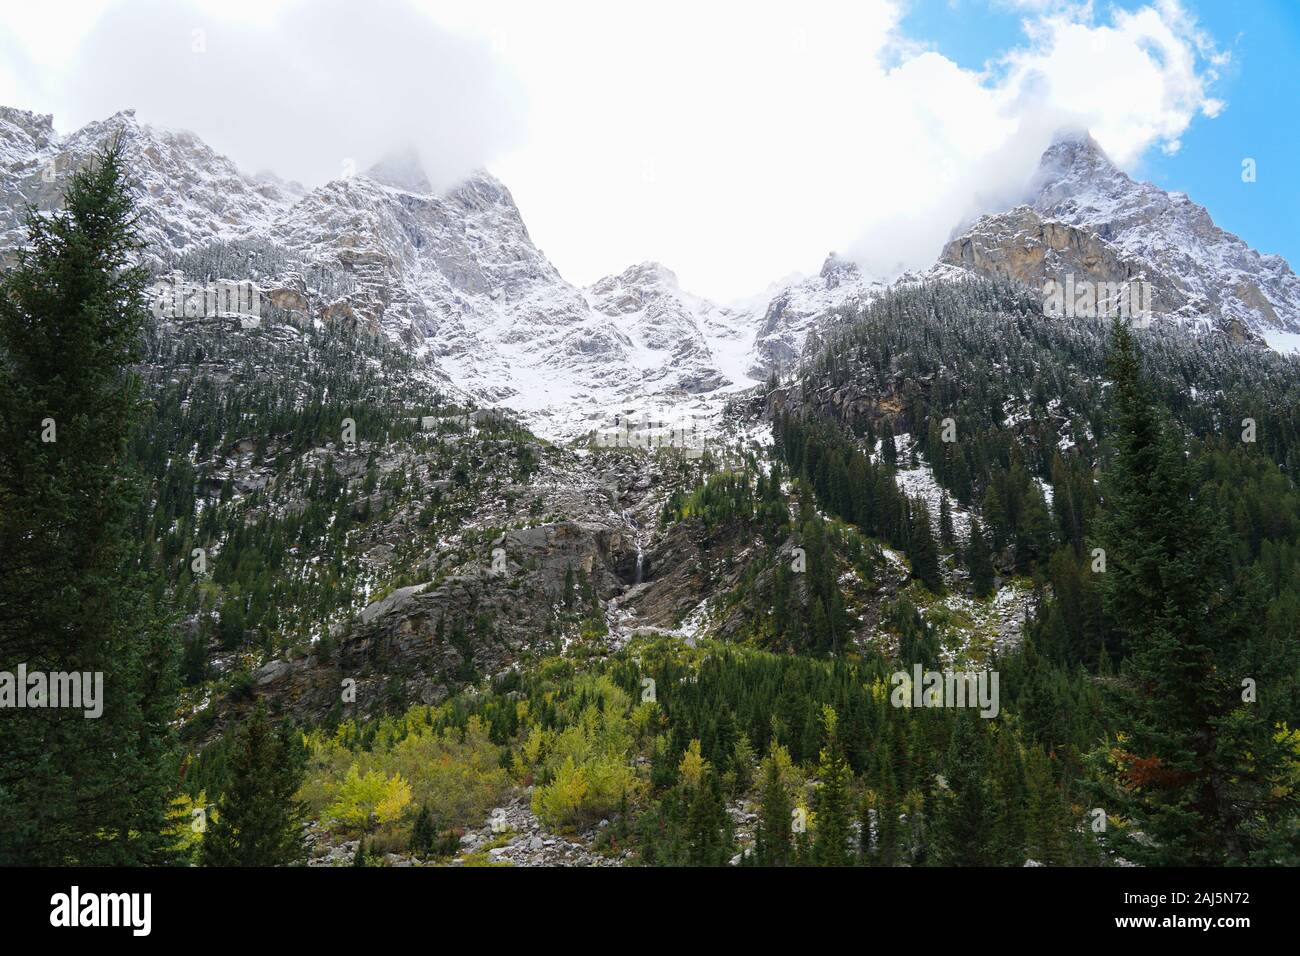 Ein Blick auf die Kaskade Canyon hoch aufragenden Wände mit schneebedeckten Gipfeln, herbstlichen Farben und einem Wasserfall. Stockfoto